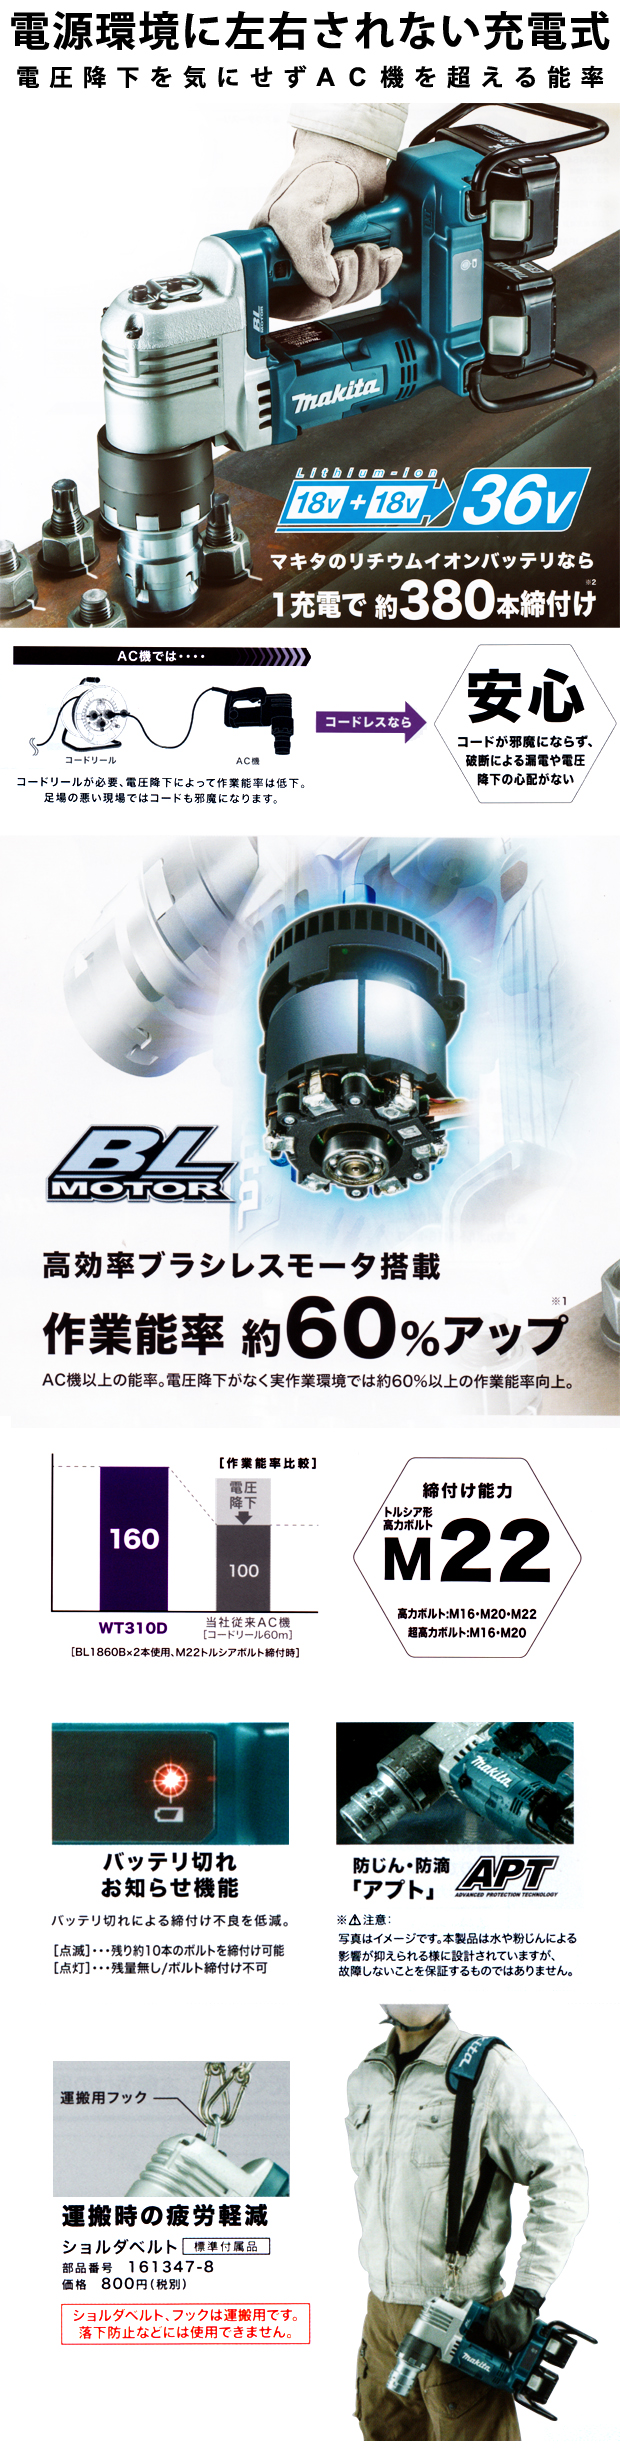 マキタ 充電式シャーレンチ WT310DPG2/DZK